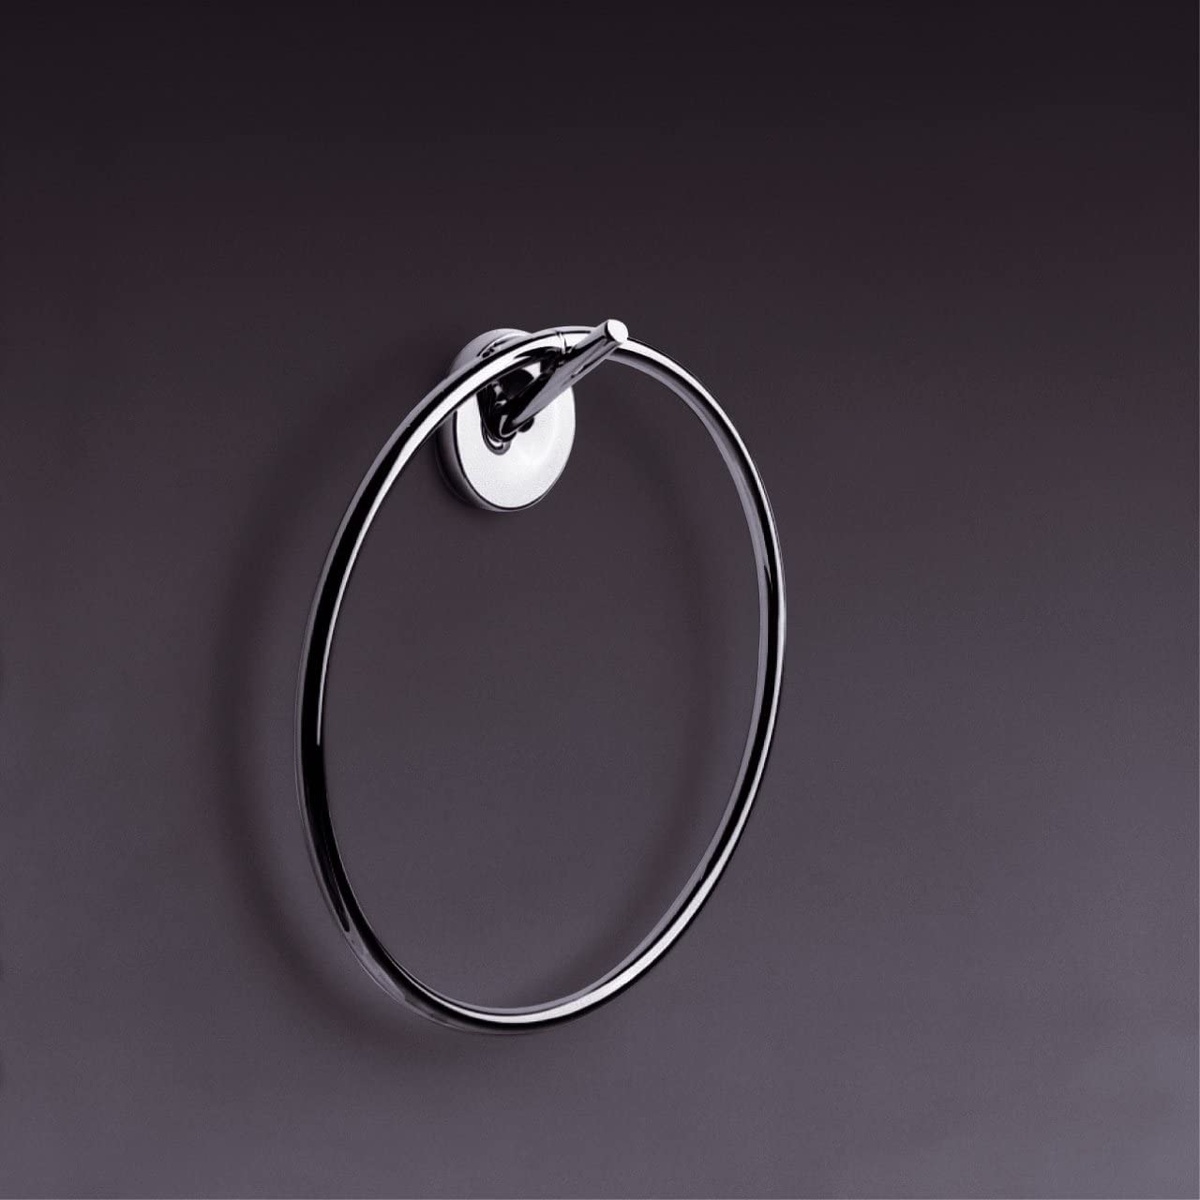 Держатель-кольцо для полотенец HANSGROHE AXOR Starck 40821000 225мм округлый металлический хром